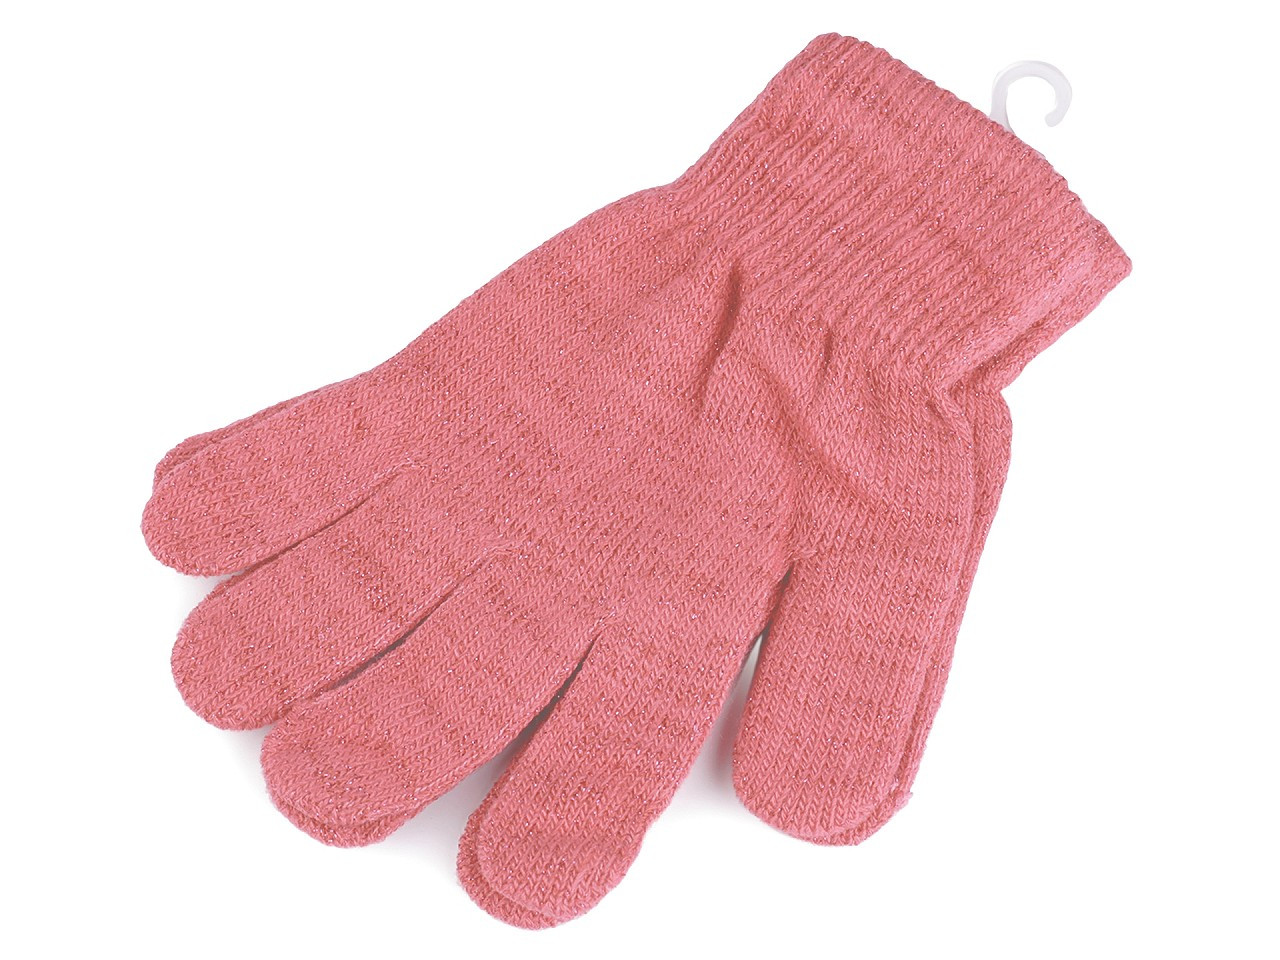 Dámské / dívčí pletené rukavice s lurexem, barva 7 růžová